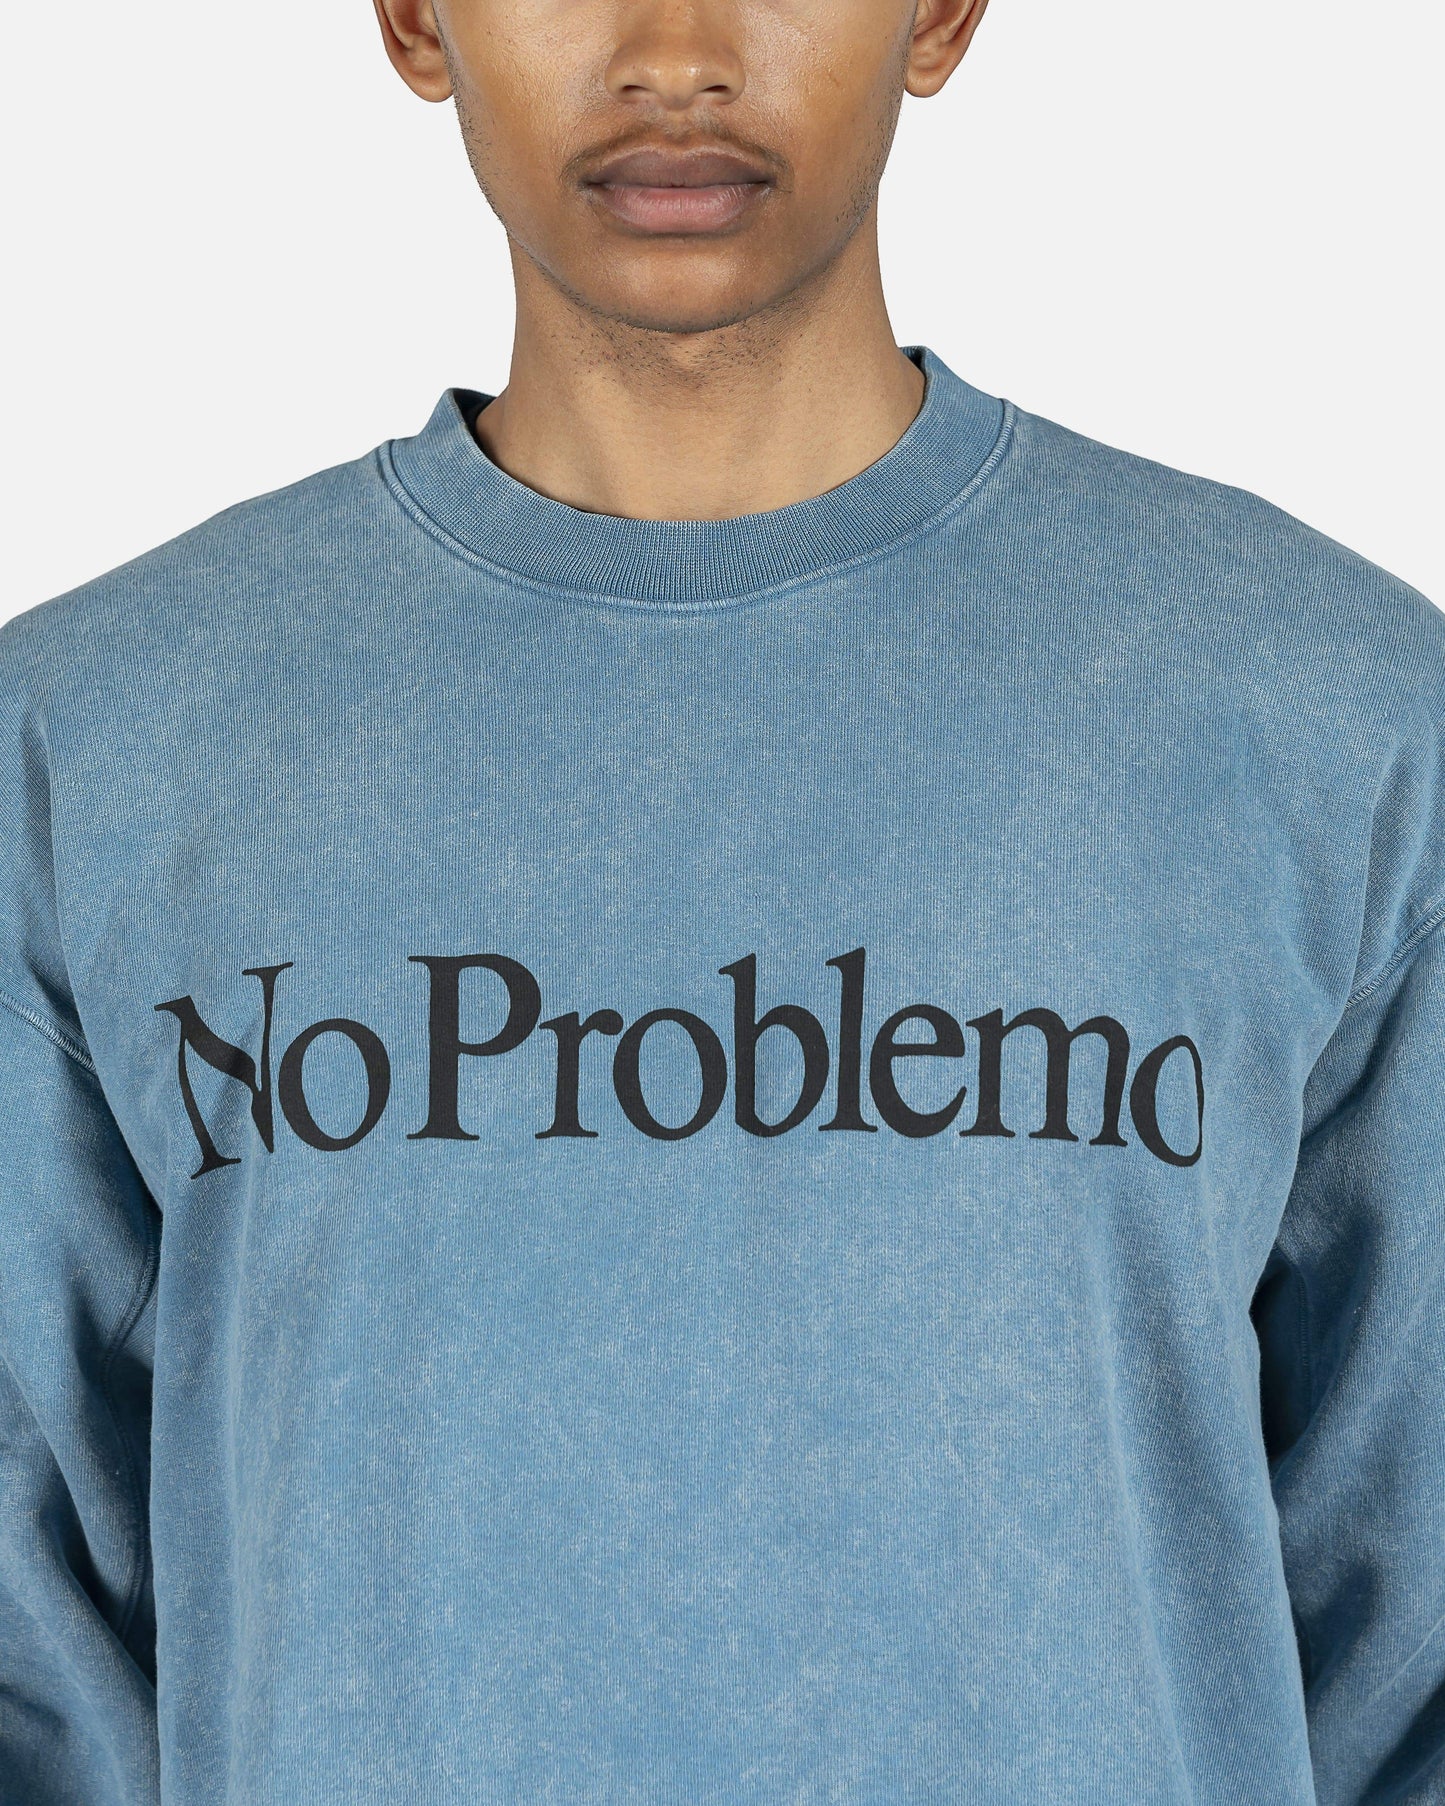 Aries Men's Sweatshirts No Problemo Sweatshirt in Blue